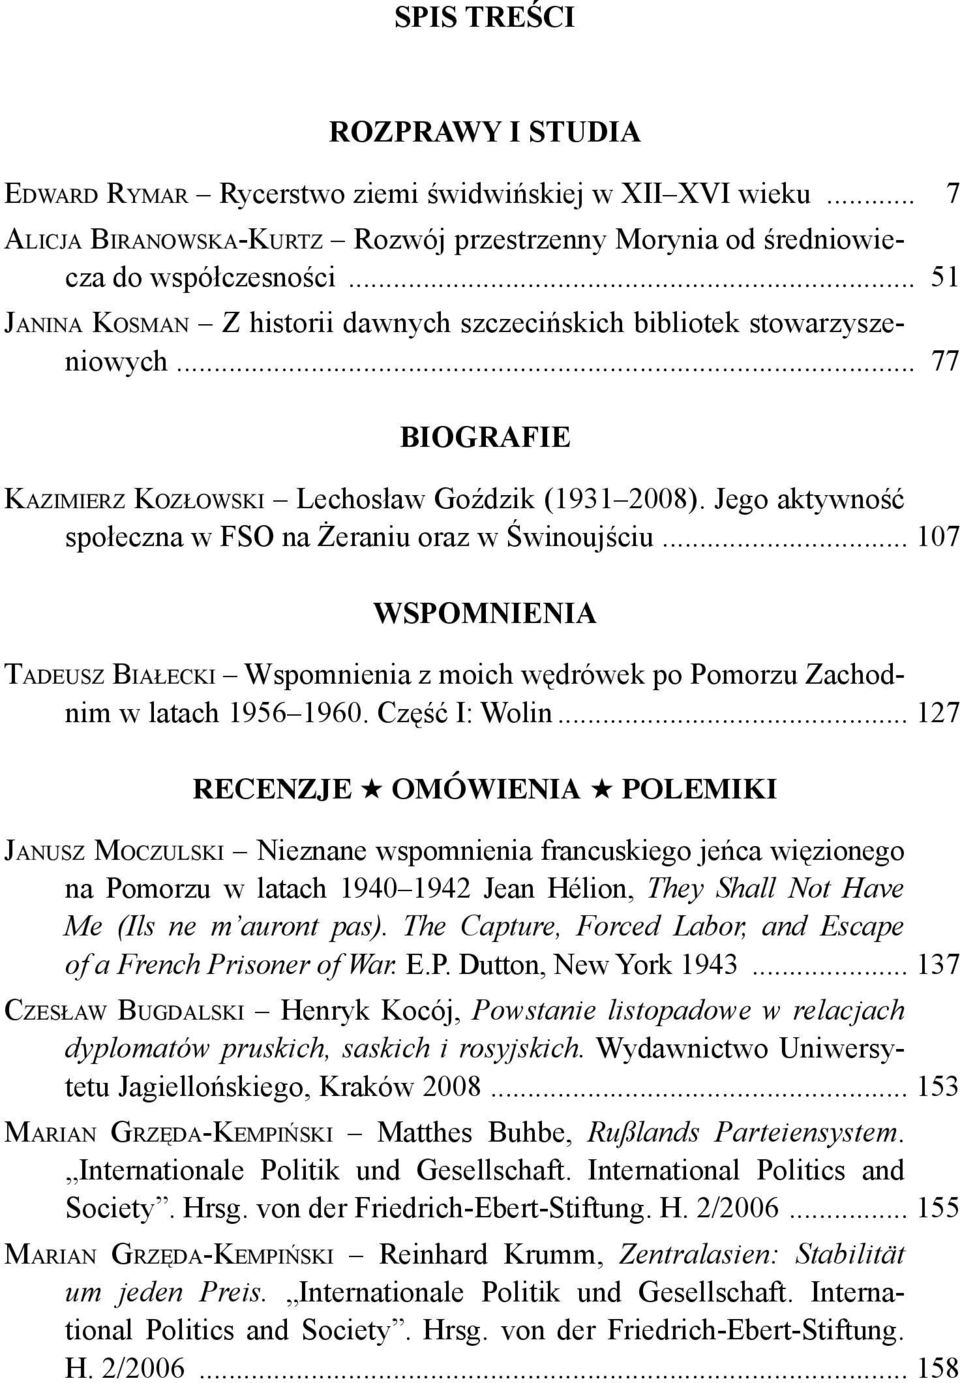 Jego aktywność społeczna w FSO na Żeraniu oraz w Świnoujściu... 107 WSPOMNIENIA TADEUSZ BIAŁECKI Wspomnienia z moich wędrówek po Pomorzu Zachodnim w latach 1956 1960. Część I: Wolin.